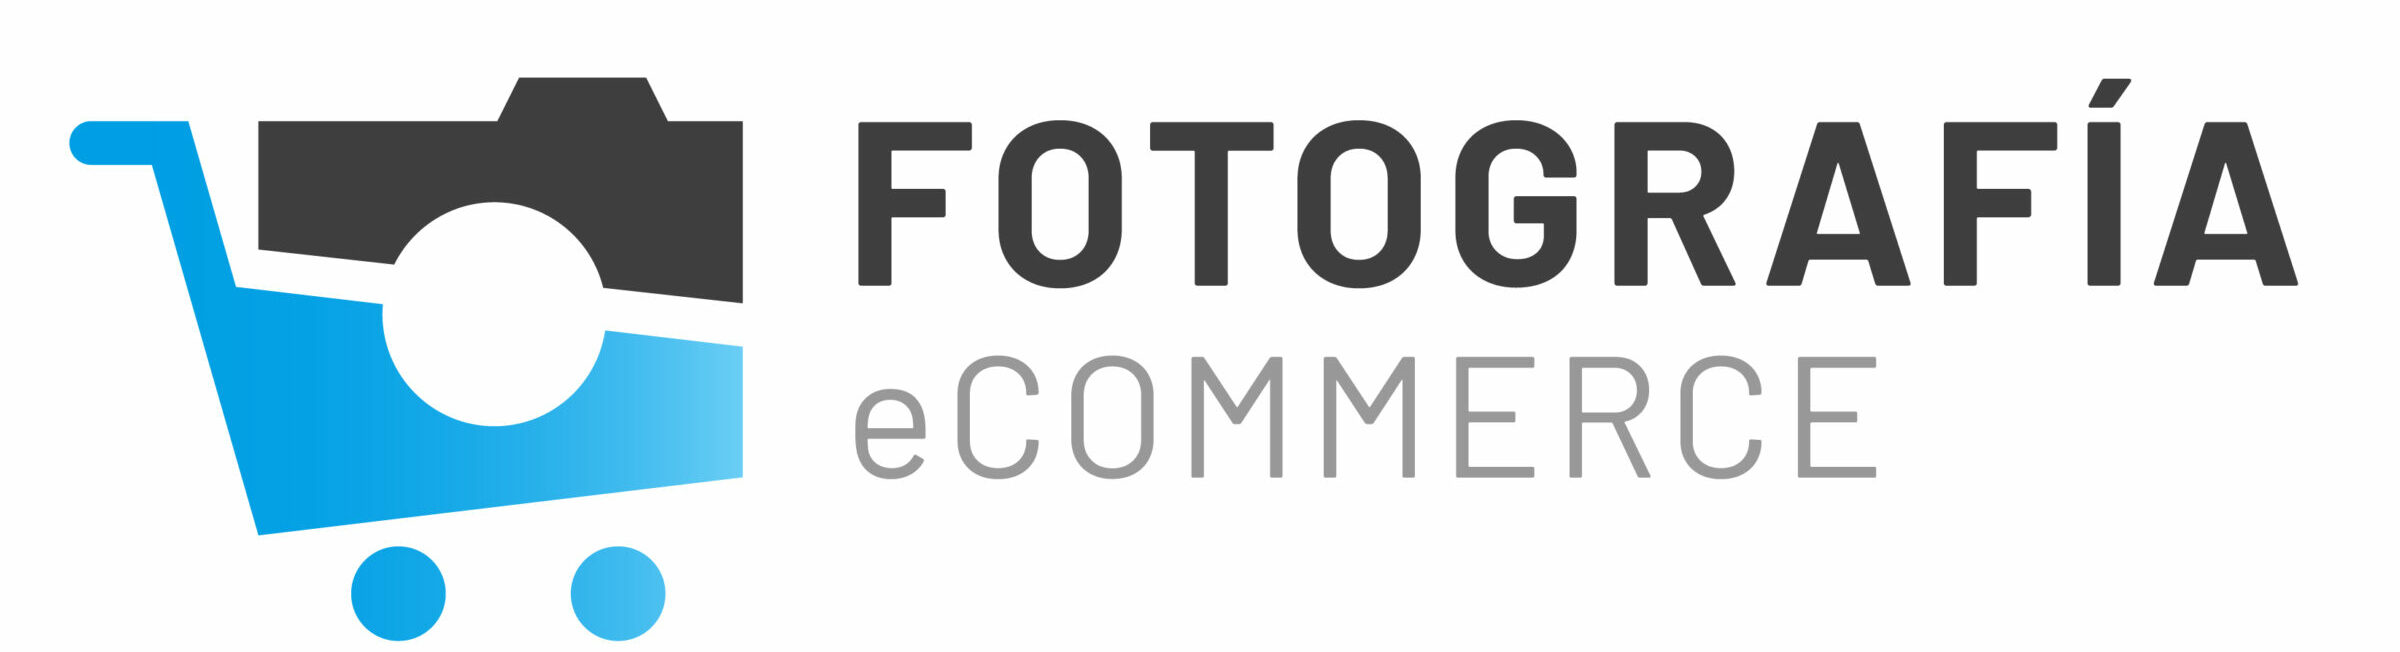 FotografiaEcommerce_Logo_positivo_degradado_RGB